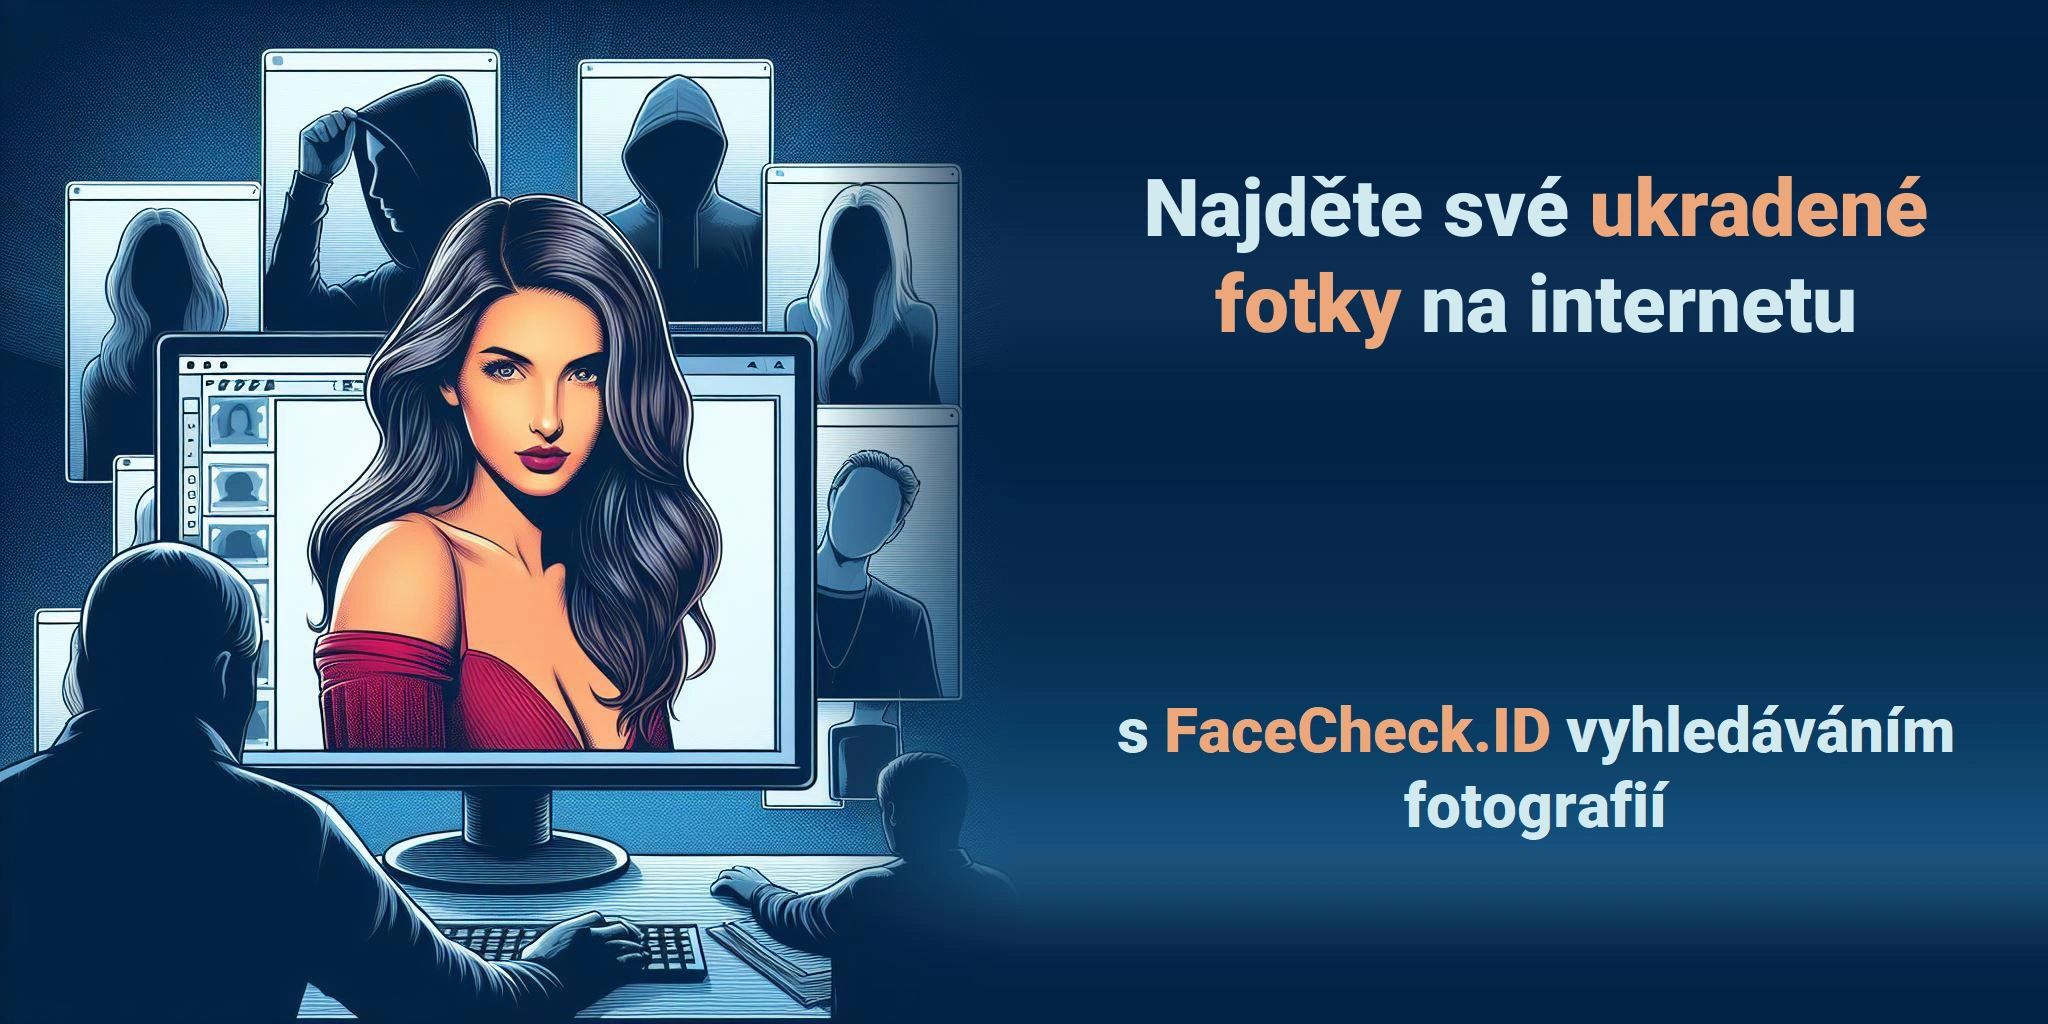 Najděte své ukradené fotky na internetu s FaceCheck.ID vyhledáváním fotografií